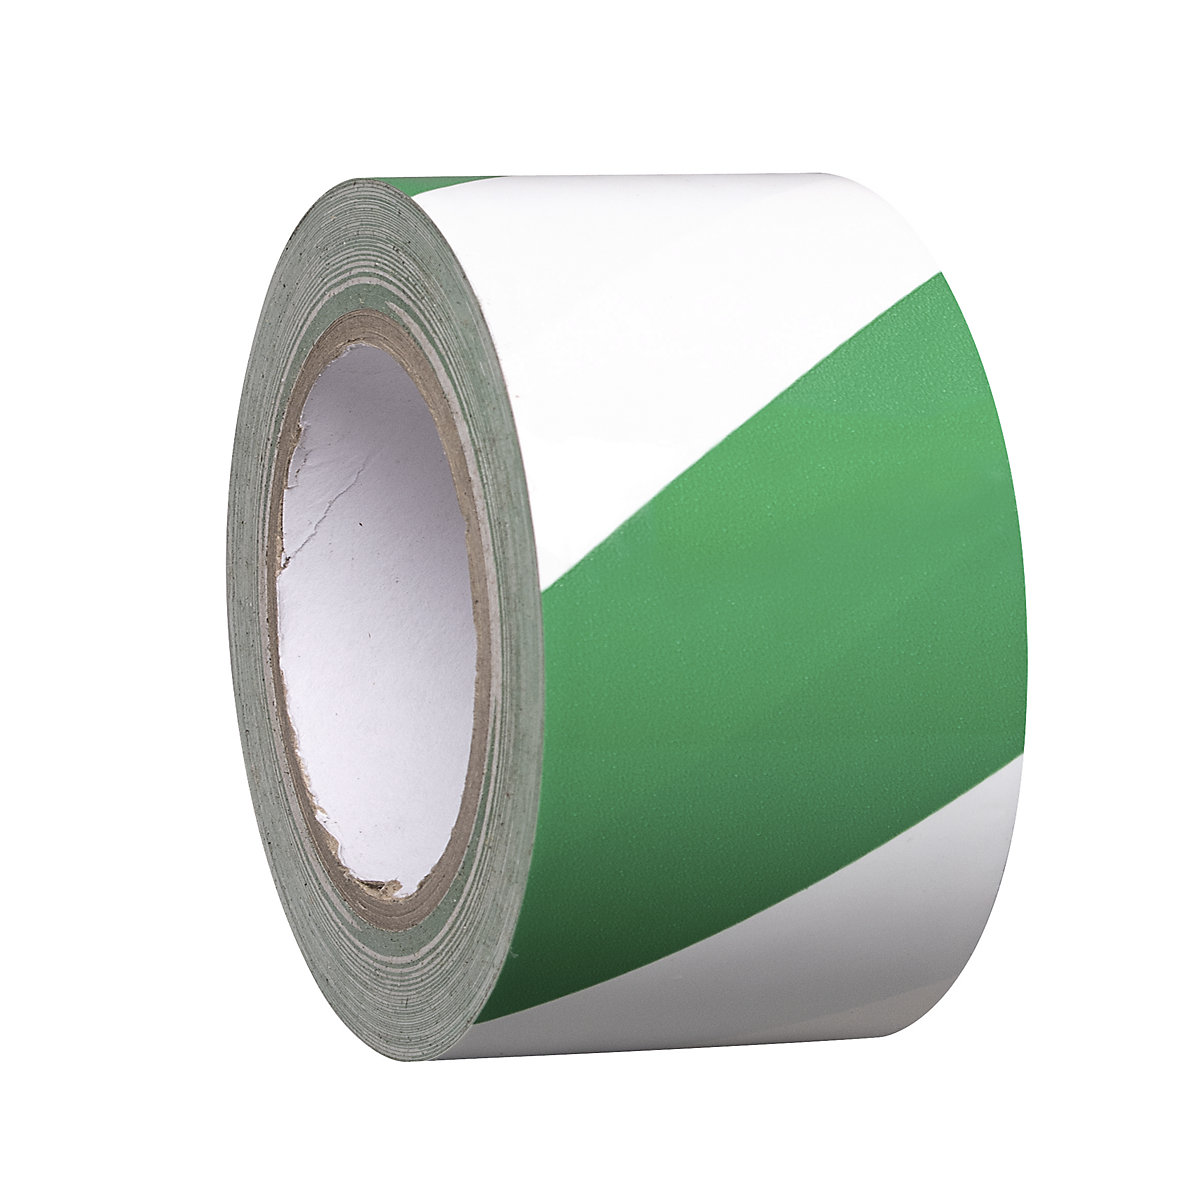 Bodenmarkierungsband aus Vinyl, zweifarbig, Breite 75 mm, grün / weiß, VE 8 Rollen-7